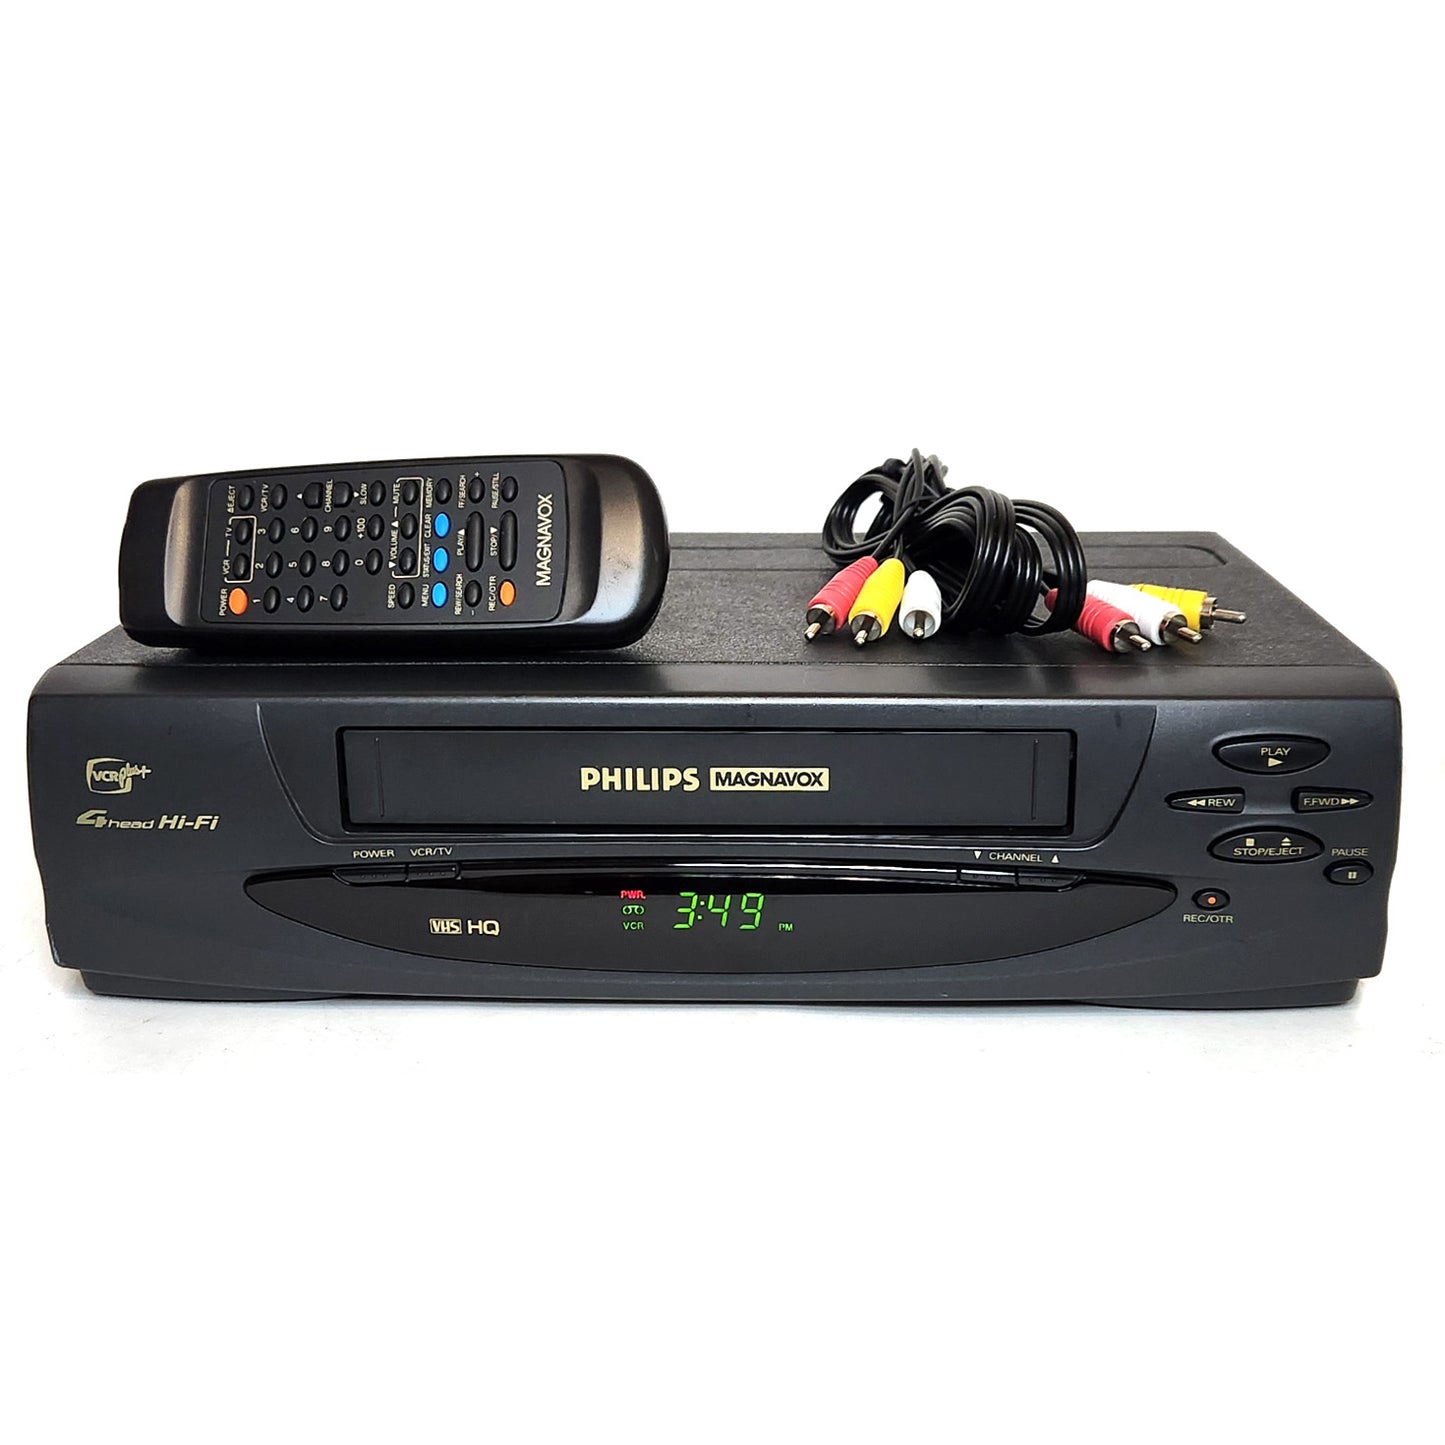 Philips Magnavox VRX260AT VCR, 4-Head Hi-Fi Stereo